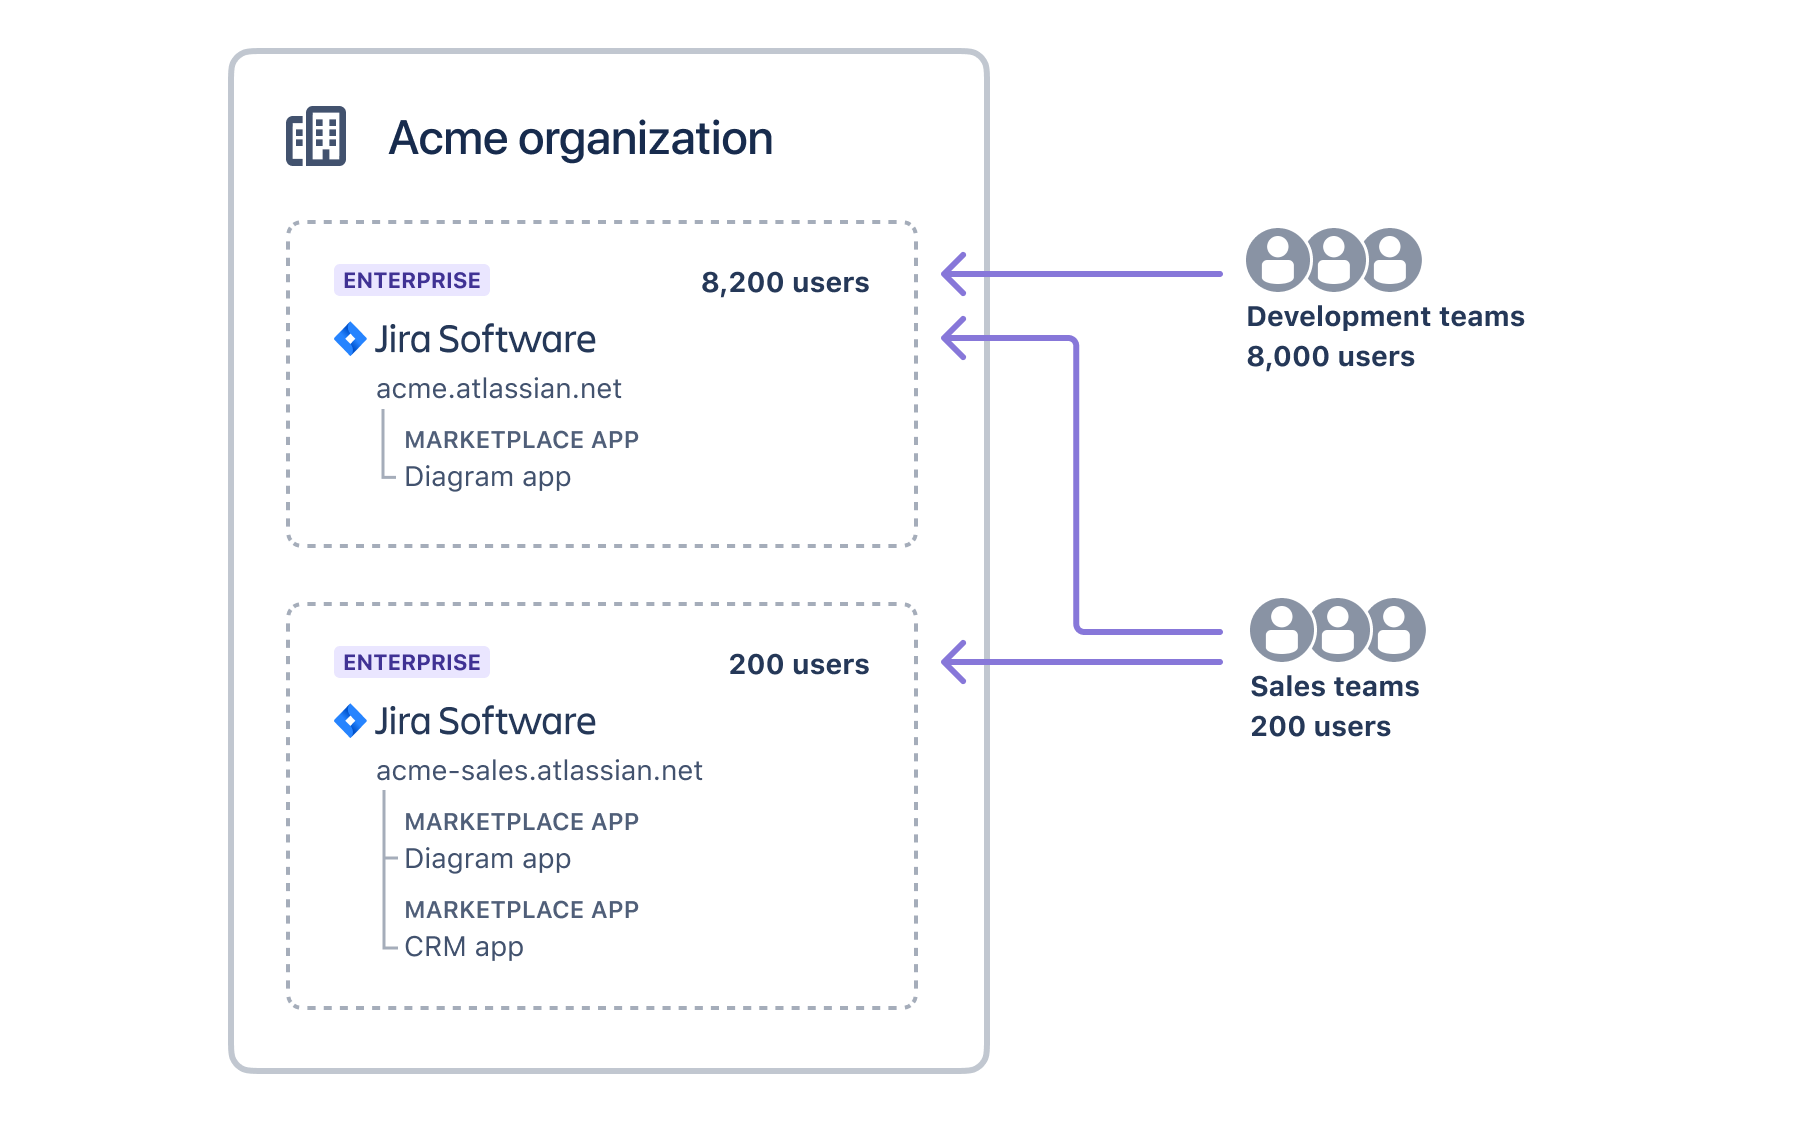 それぞれに異なるアプリとユーザーを持つ 2 つの Jira インスタンスを持つ組織を示す図。